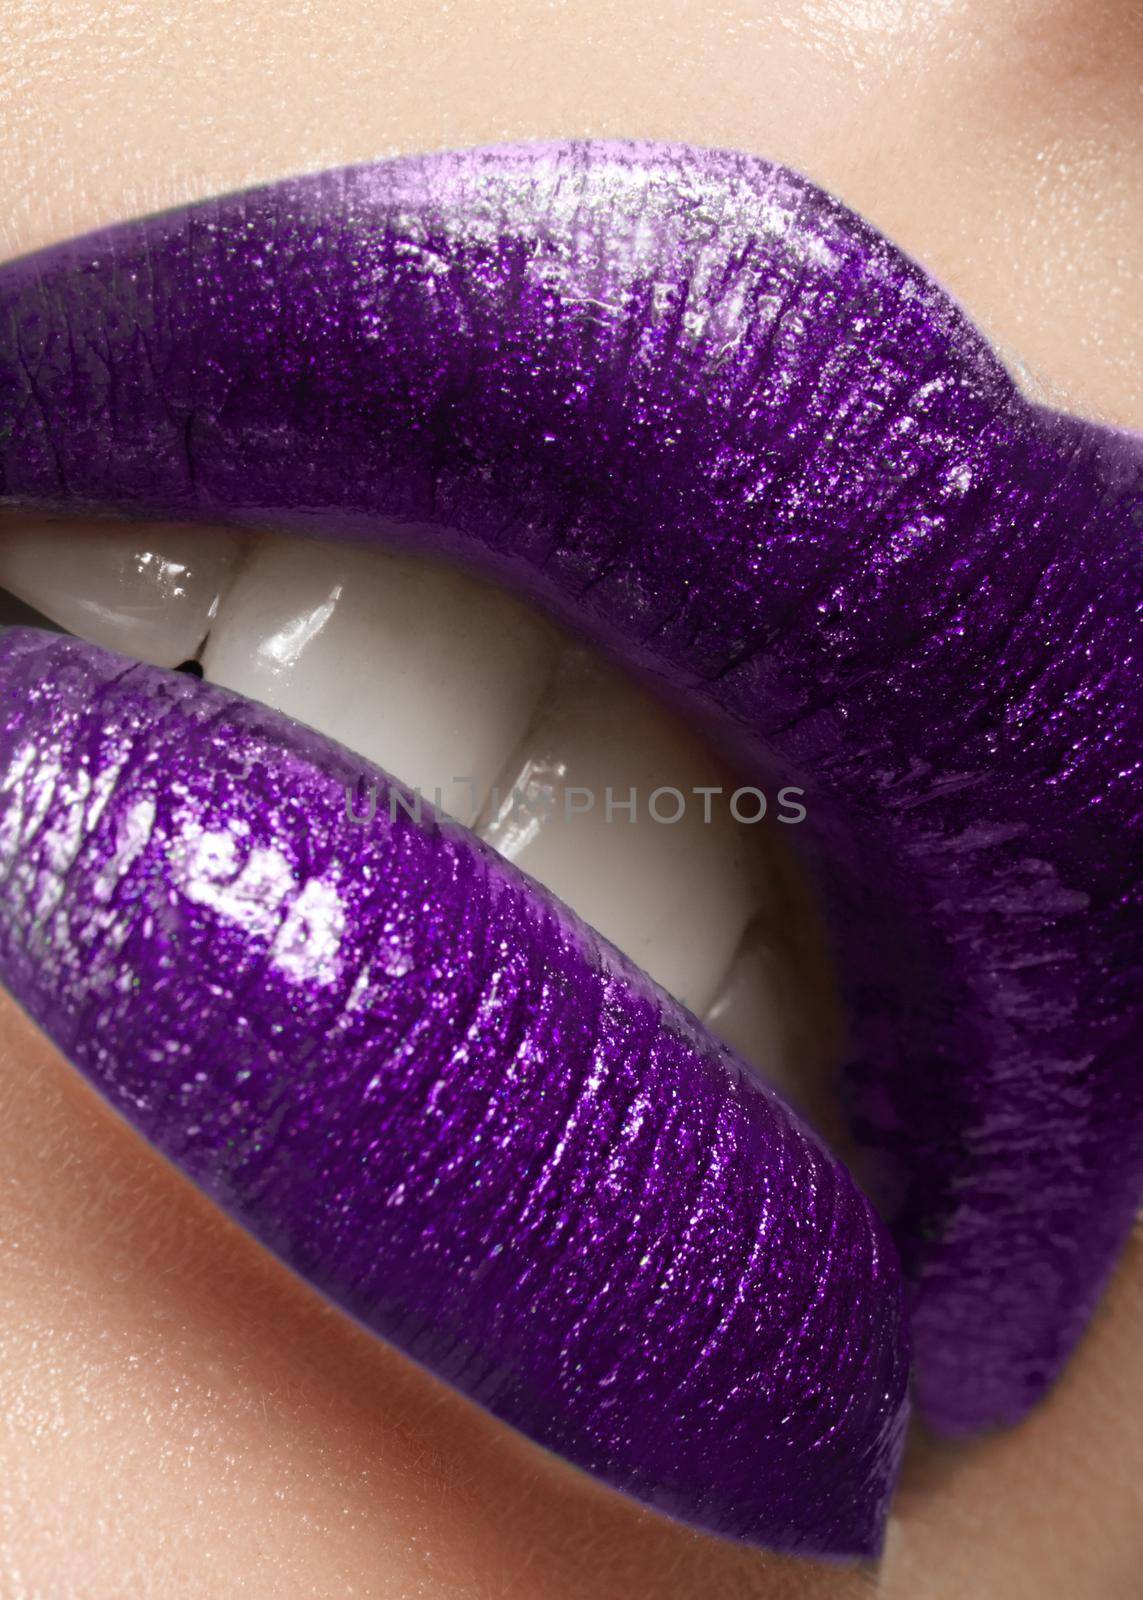 Glamour plum Gloss Lip Make-up. Fashion Makeup Beauty Shot. Close-up Sexy full Lips with celebrate Purple glossy lipstick